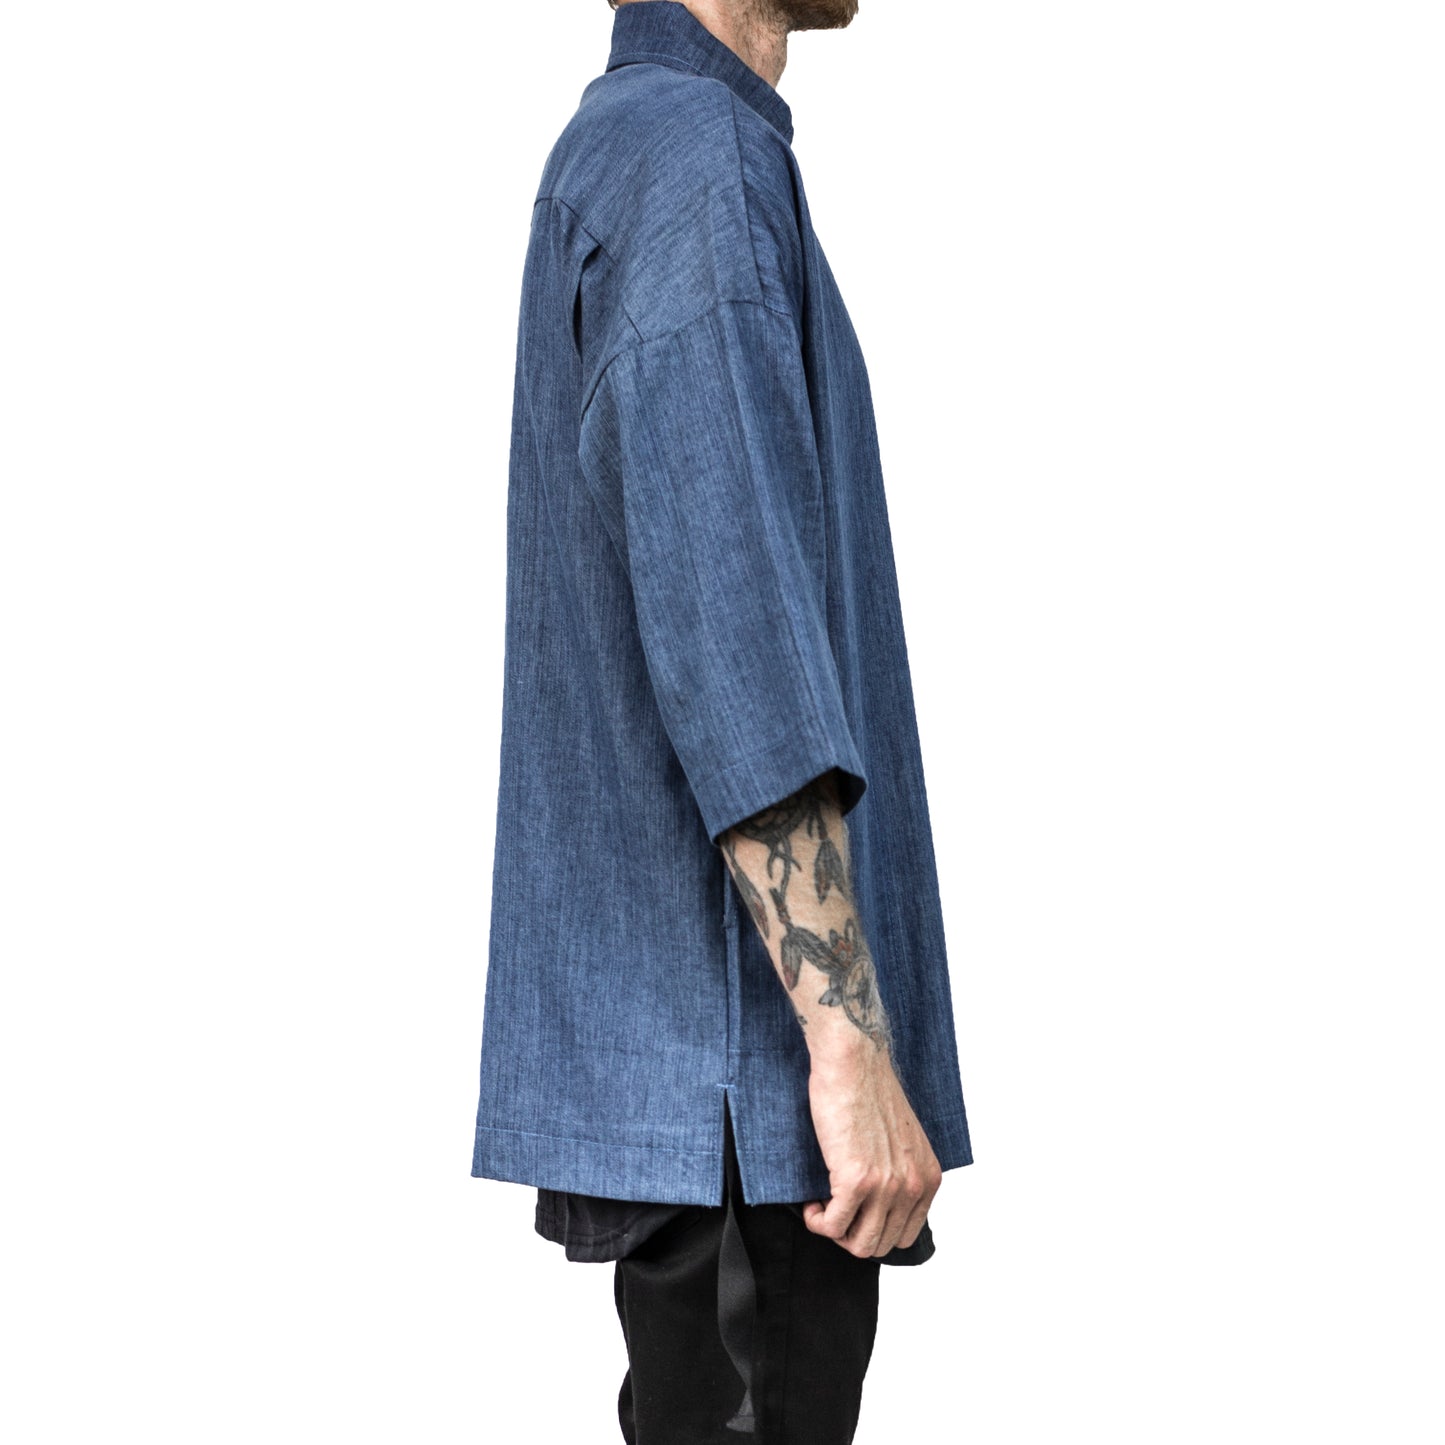 Camisa con cuello y cremallera: mezclilla azul